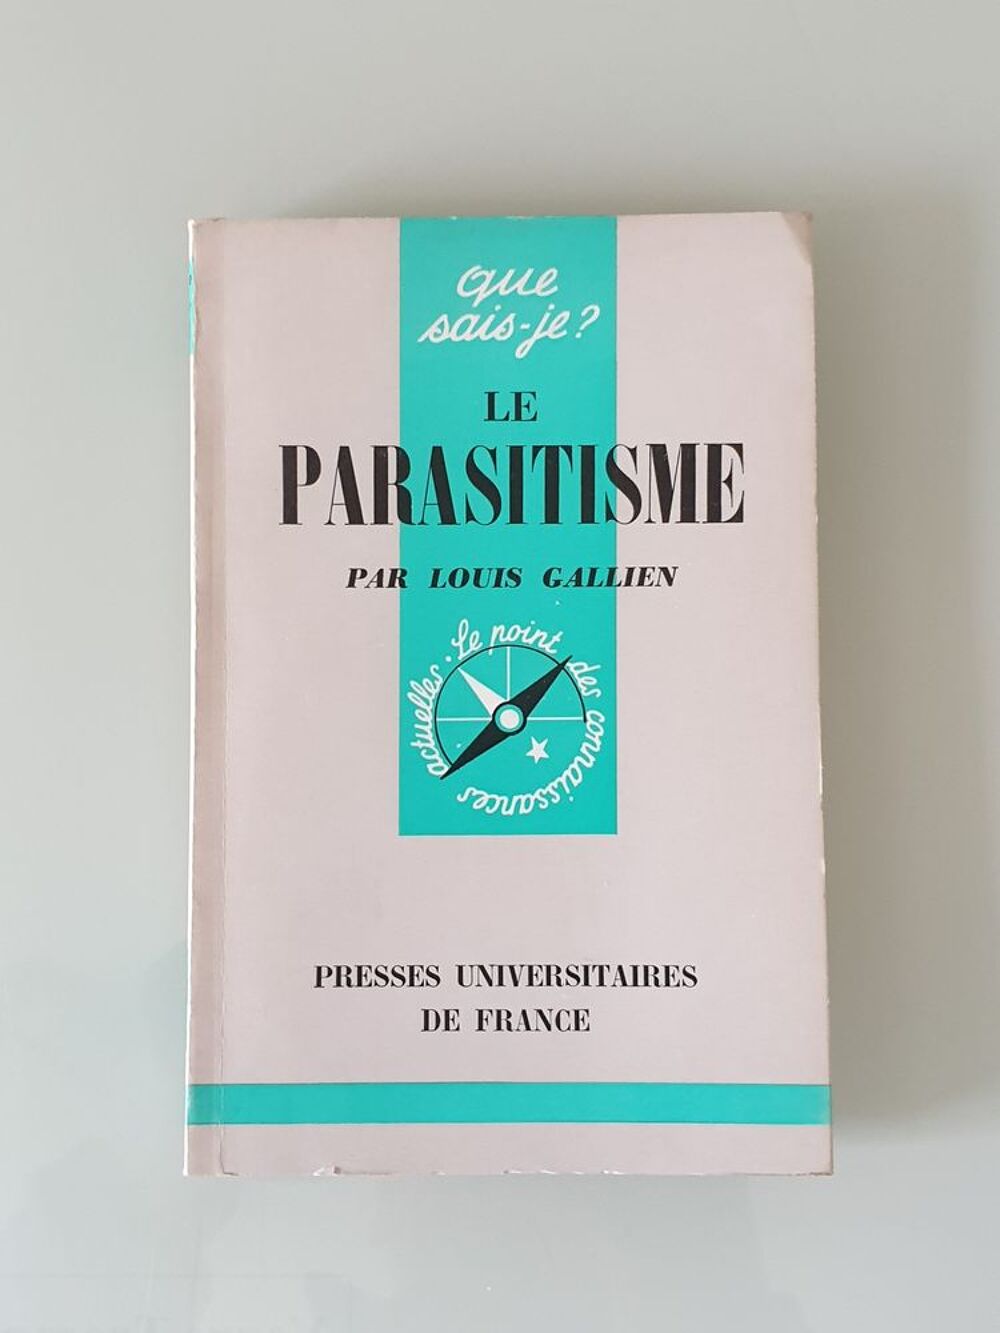 Le Parasitisme de Louis Gallien
Marseille 9 eme 
Livres et BD